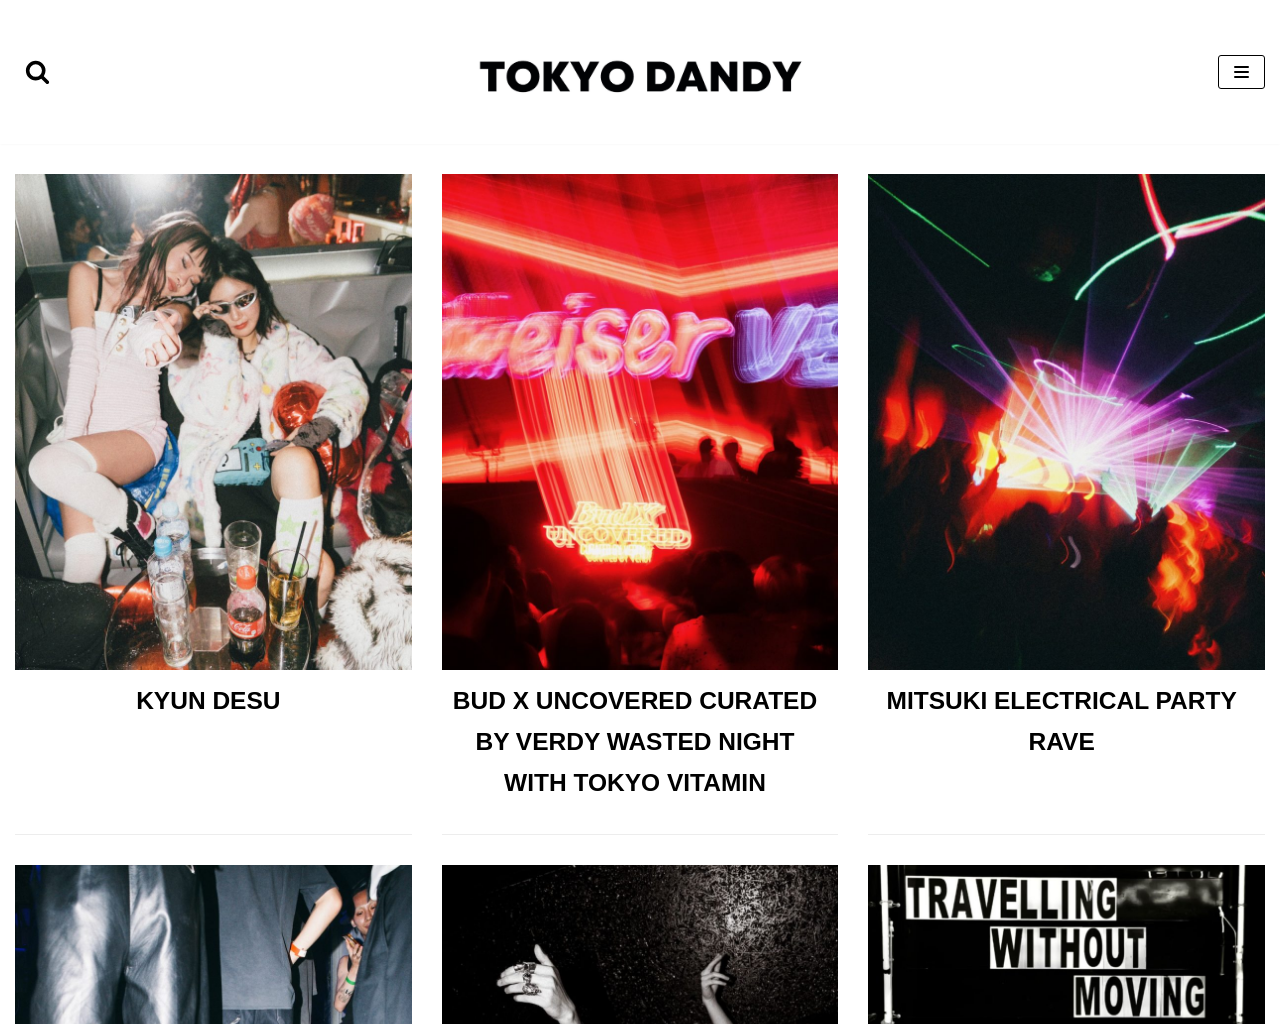 tokyodandy.com